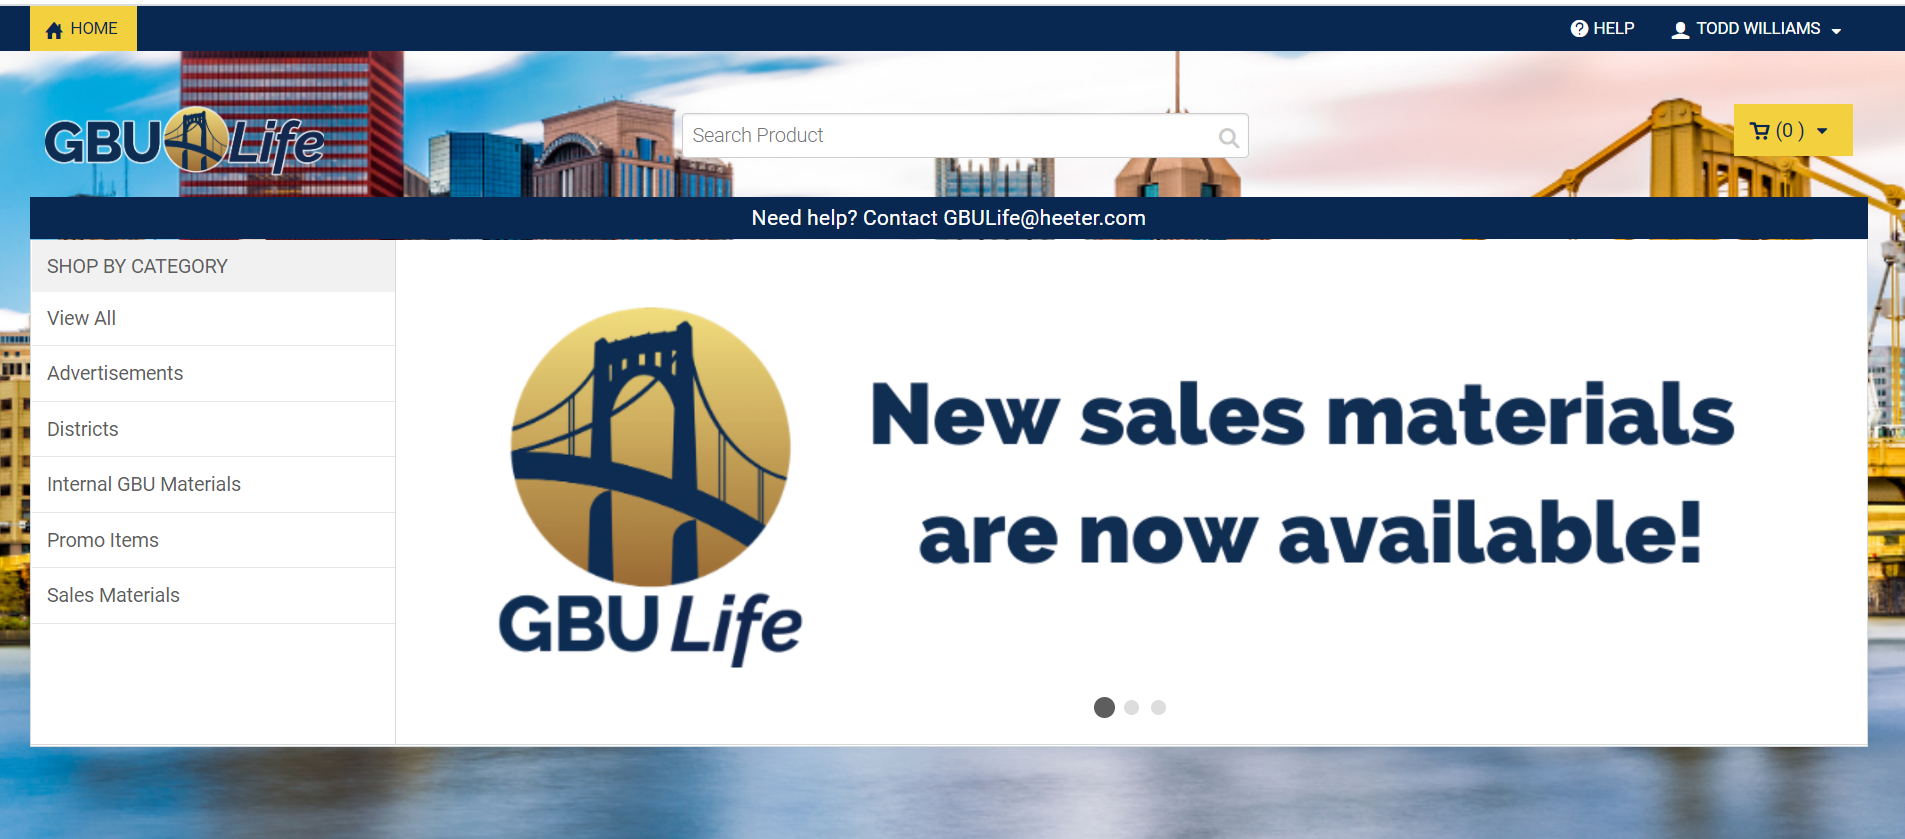 GBU-new-sales-materials